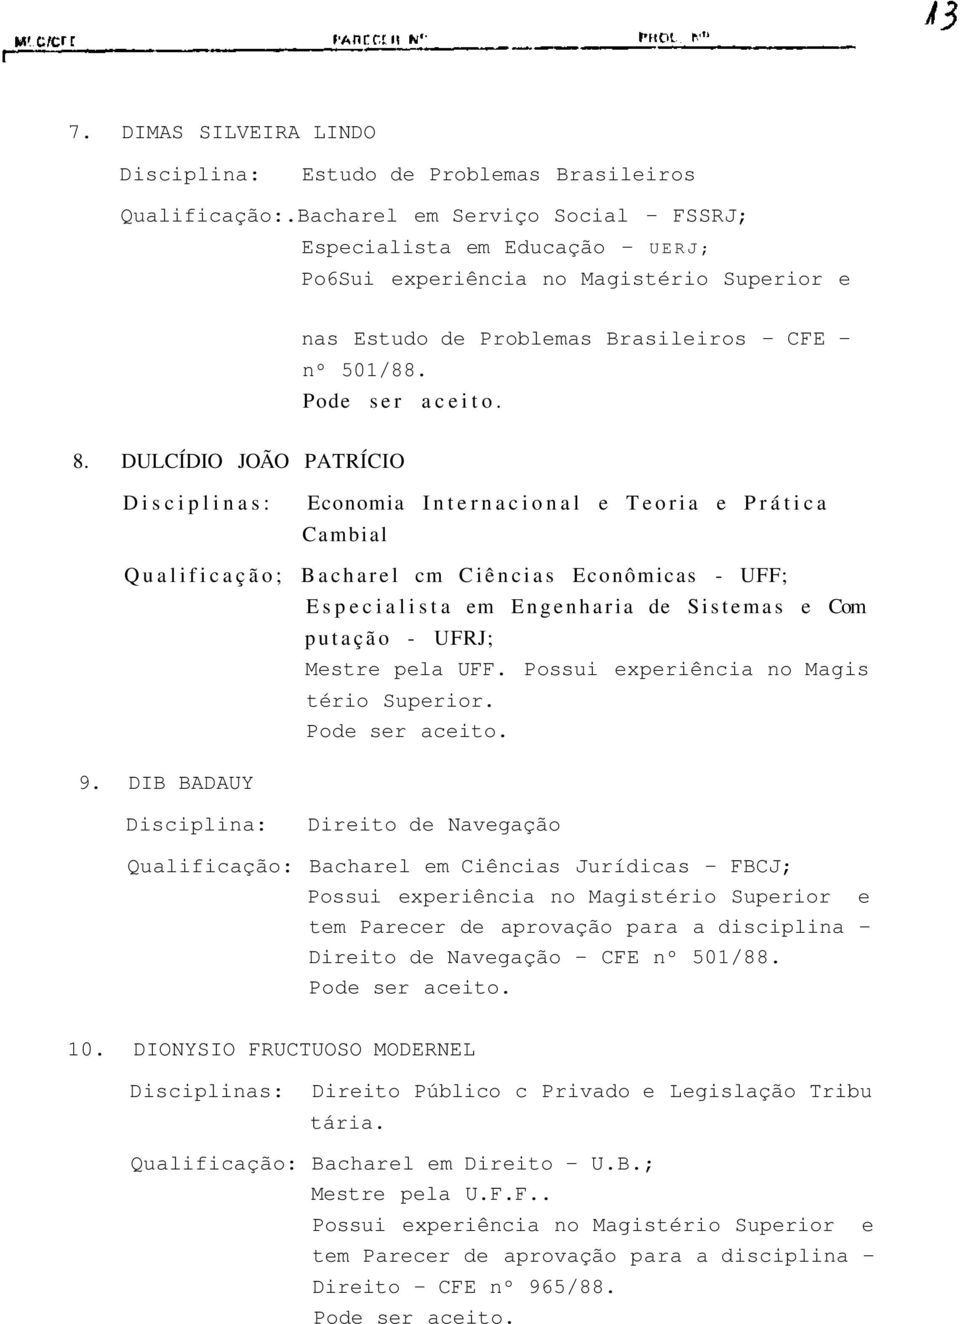 DULCÍDIO JOÃO PATRÍCIO Disciplinas: Economia Internacional e Teoria e Prática Cambial Qualificação; Bacharel cm Ciências Econômicas - UFF; 9.